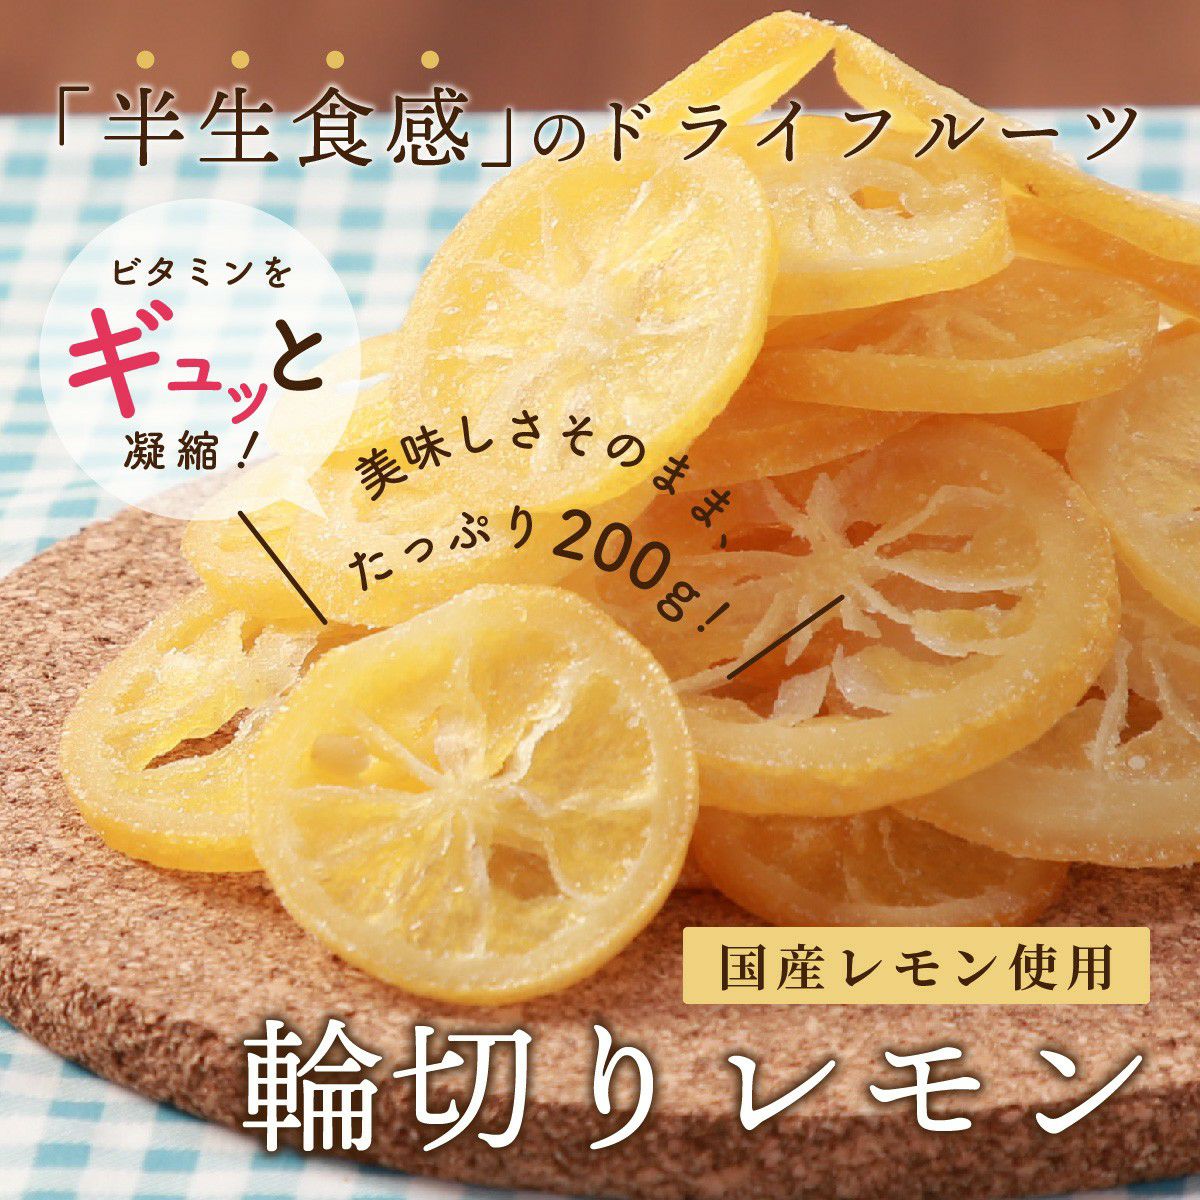 ドライフルーツ 国産 輪切り レモン 200g 特長1